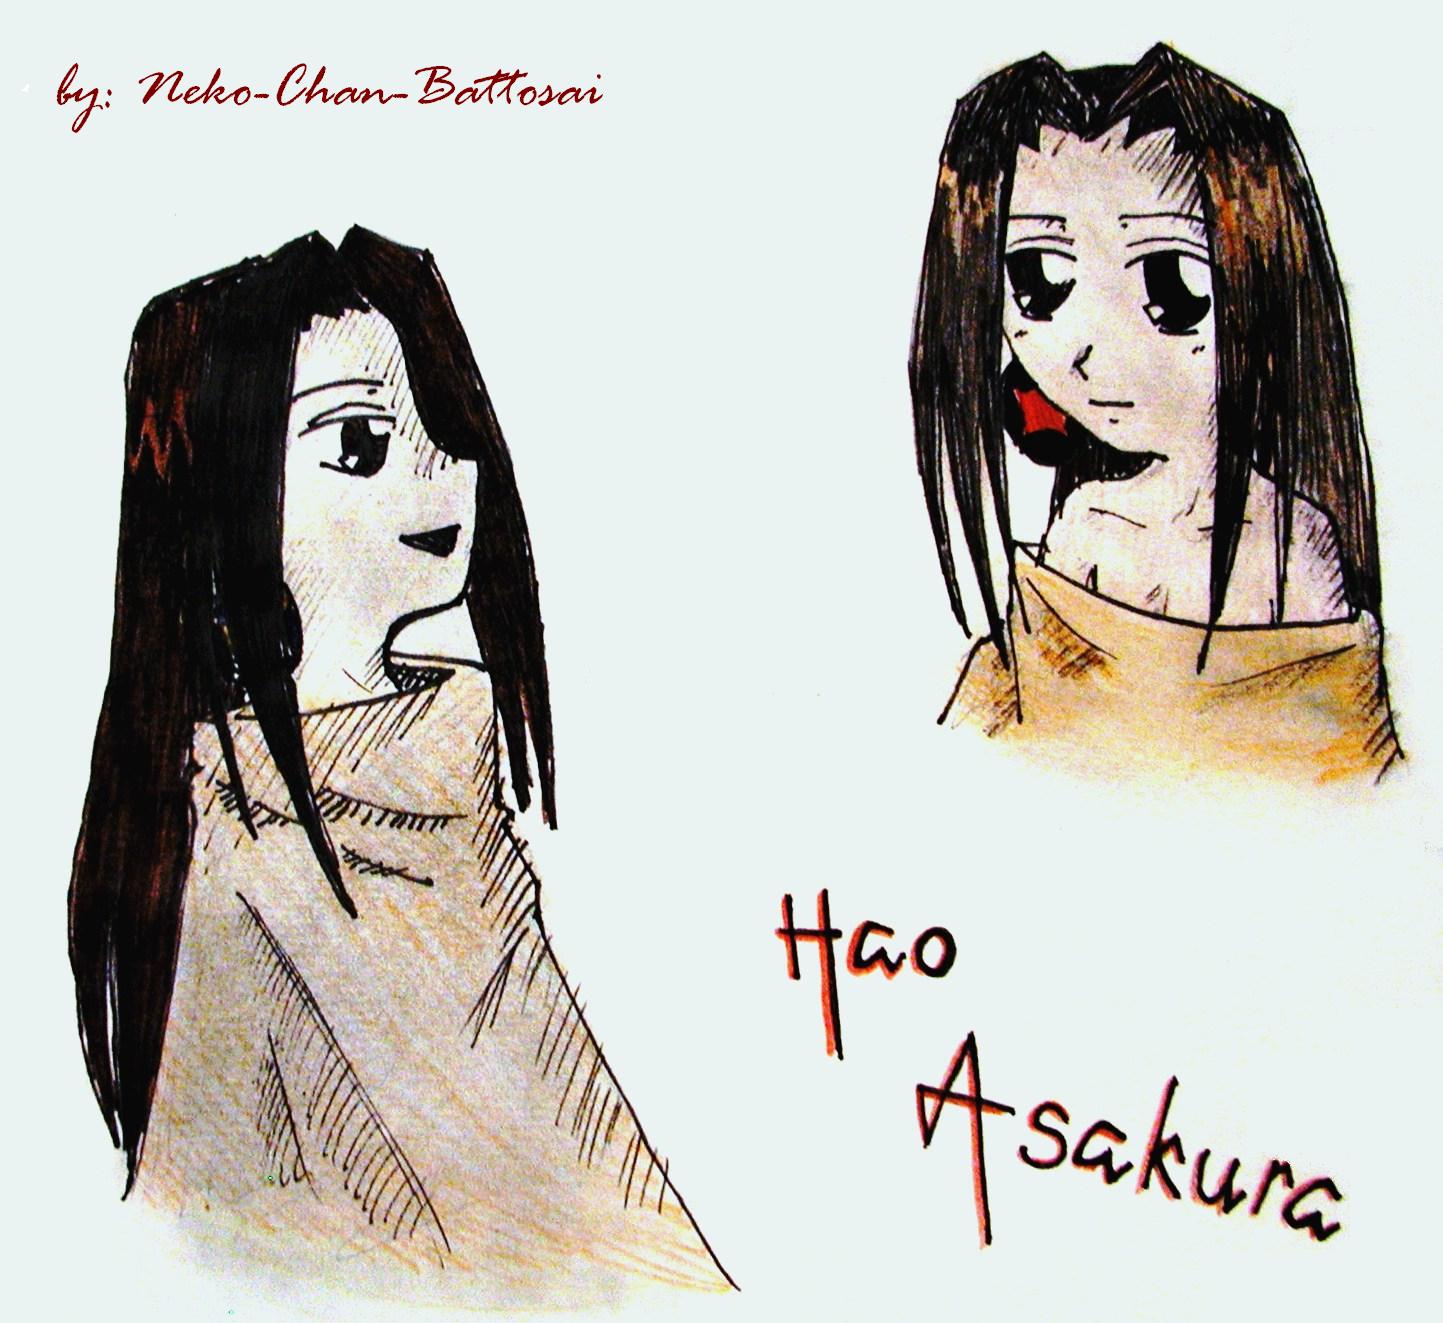 Hao by Neko-Chan-Battosai